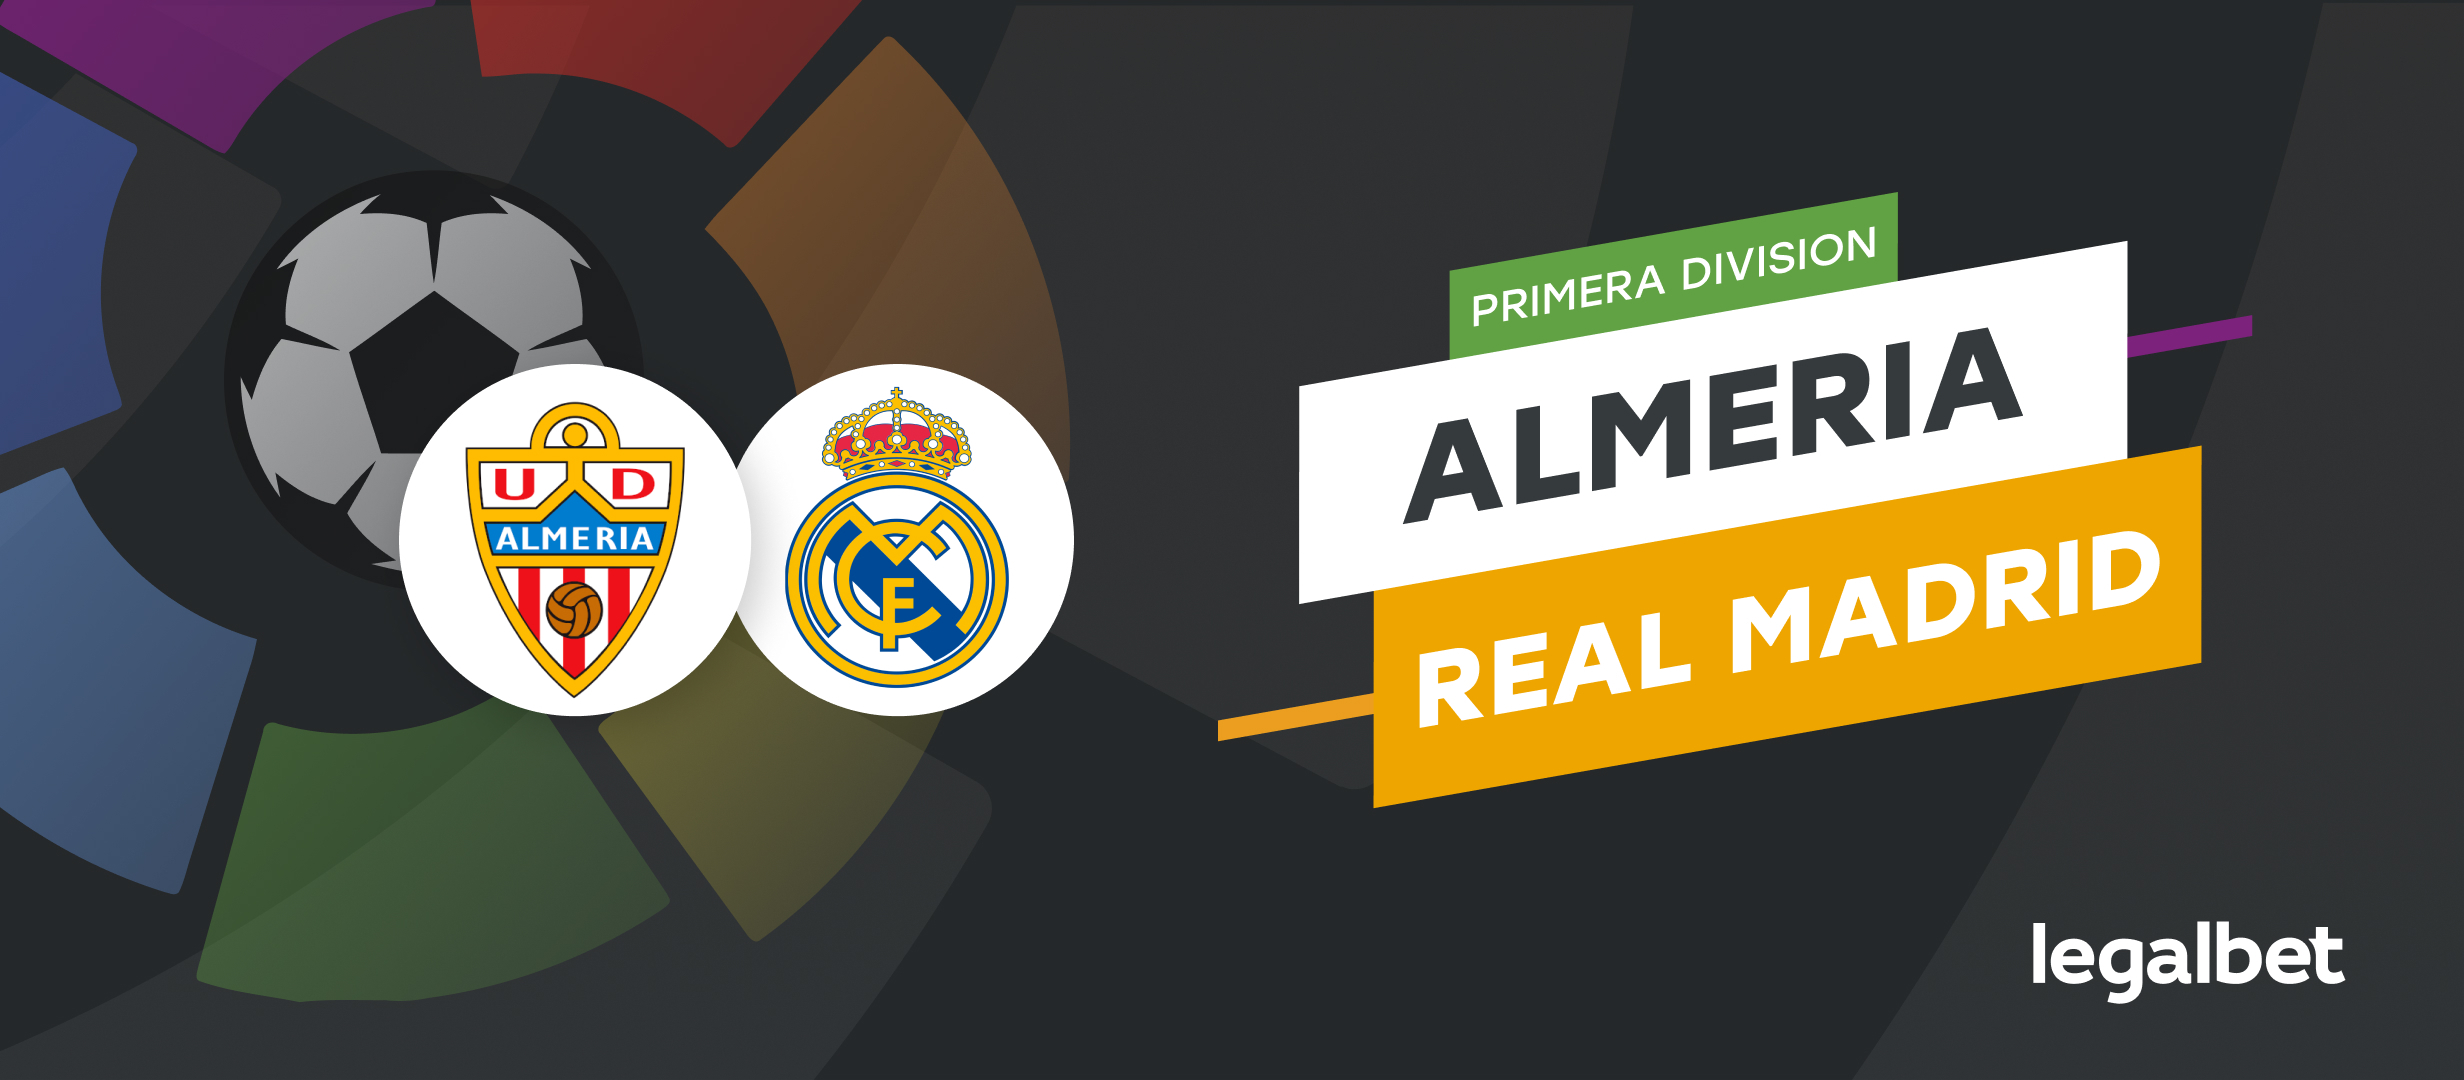 Almeria vs Real Madrid – cote la pariuri, ponturi si informatii